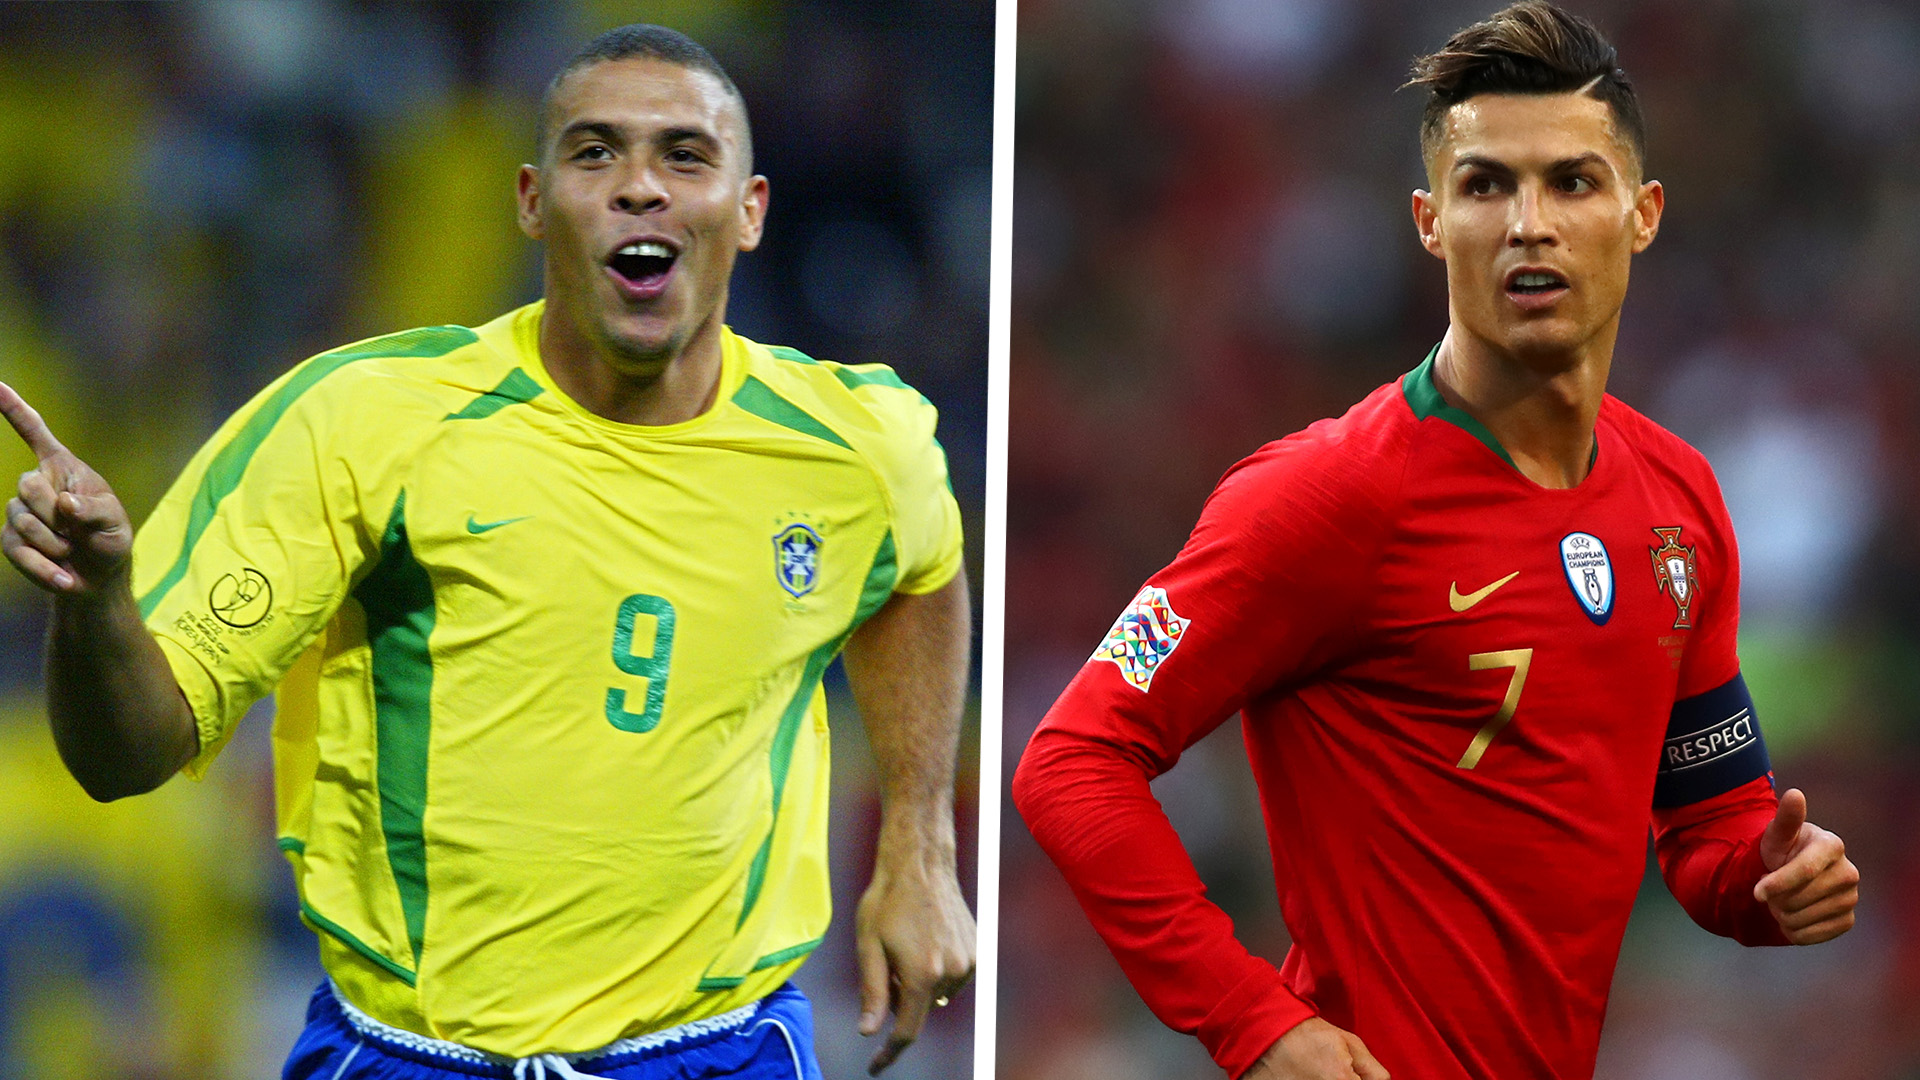 Cristiano Ronaldo contre Ronaldo Nazario dans FIFA 20 pourrait enfin décider du meilleur joueur